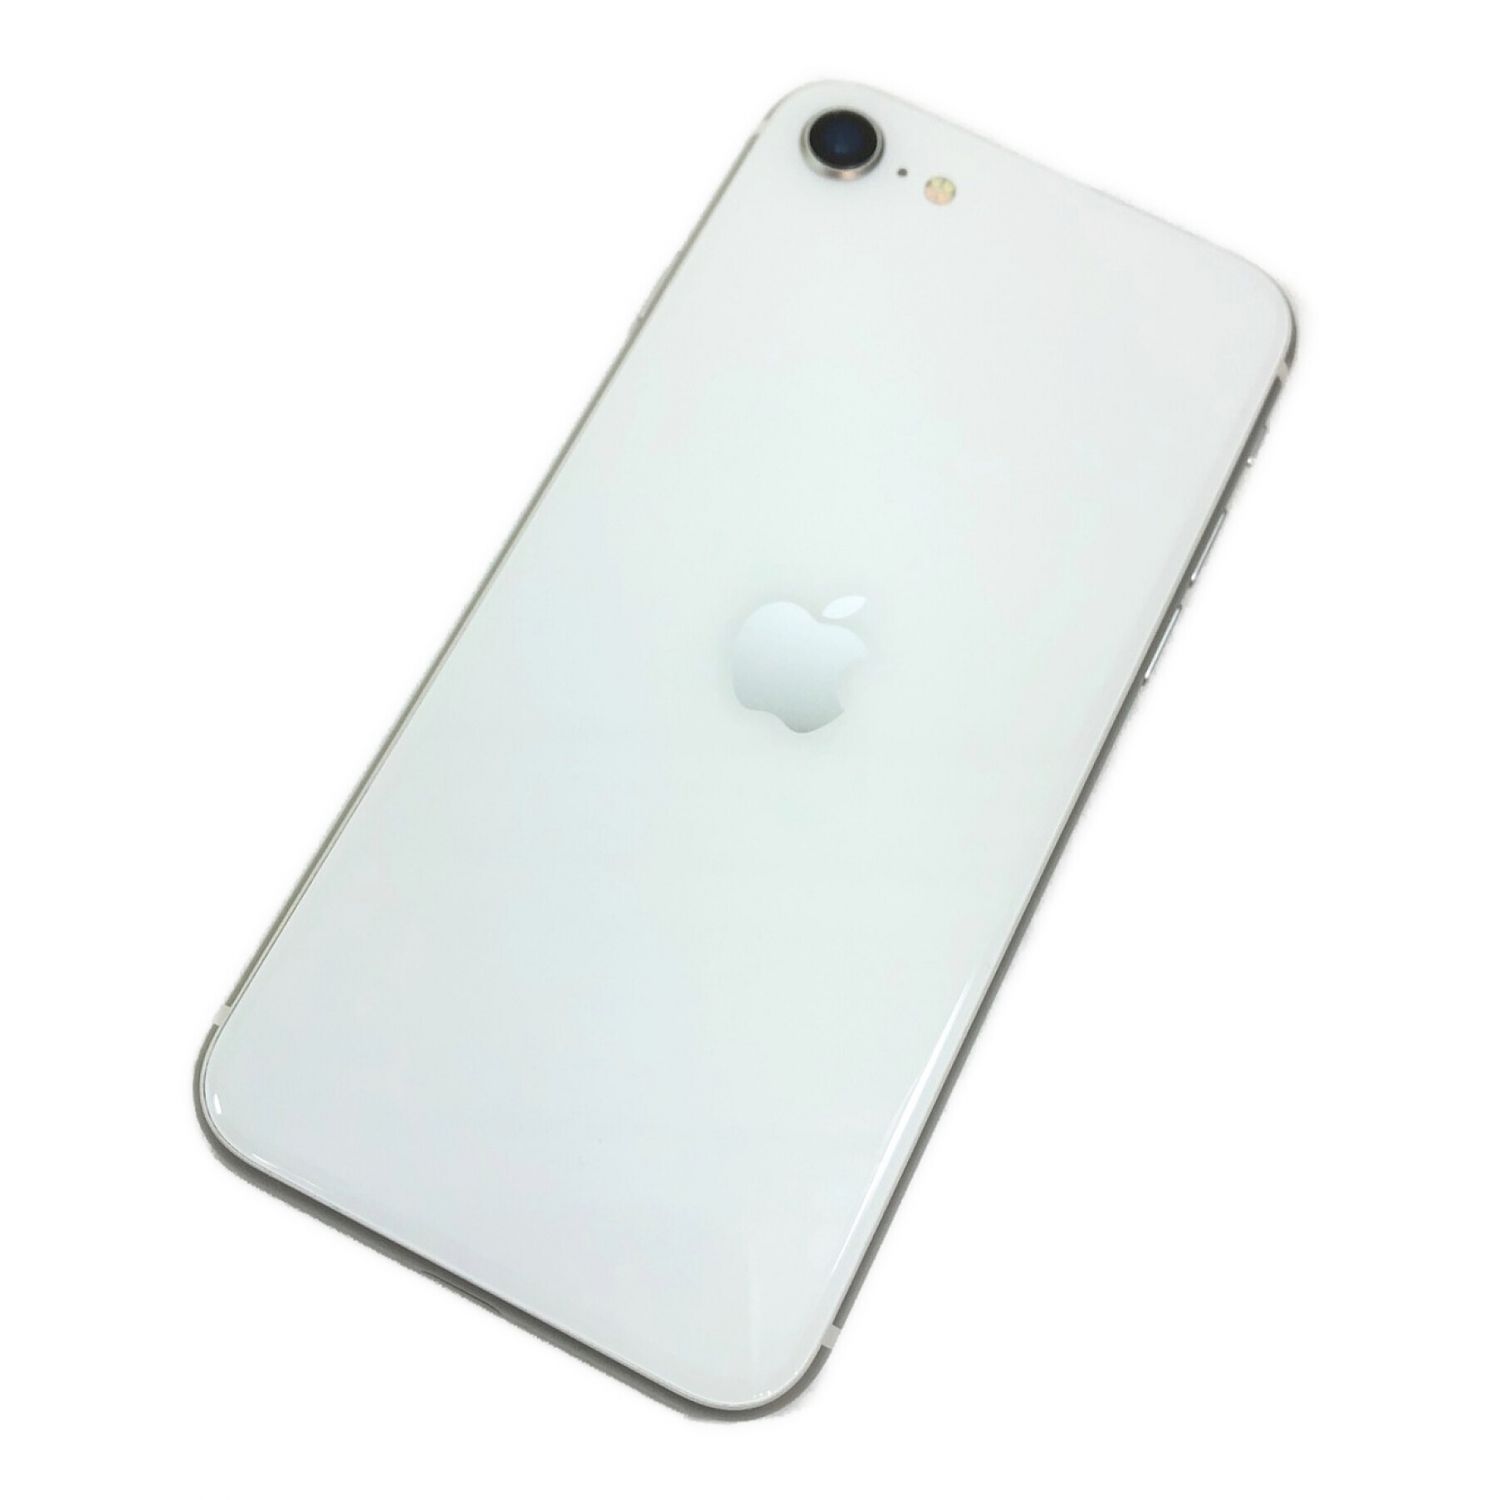 【美品】iPhone SE 64GB SIMフリー バッテリー96%